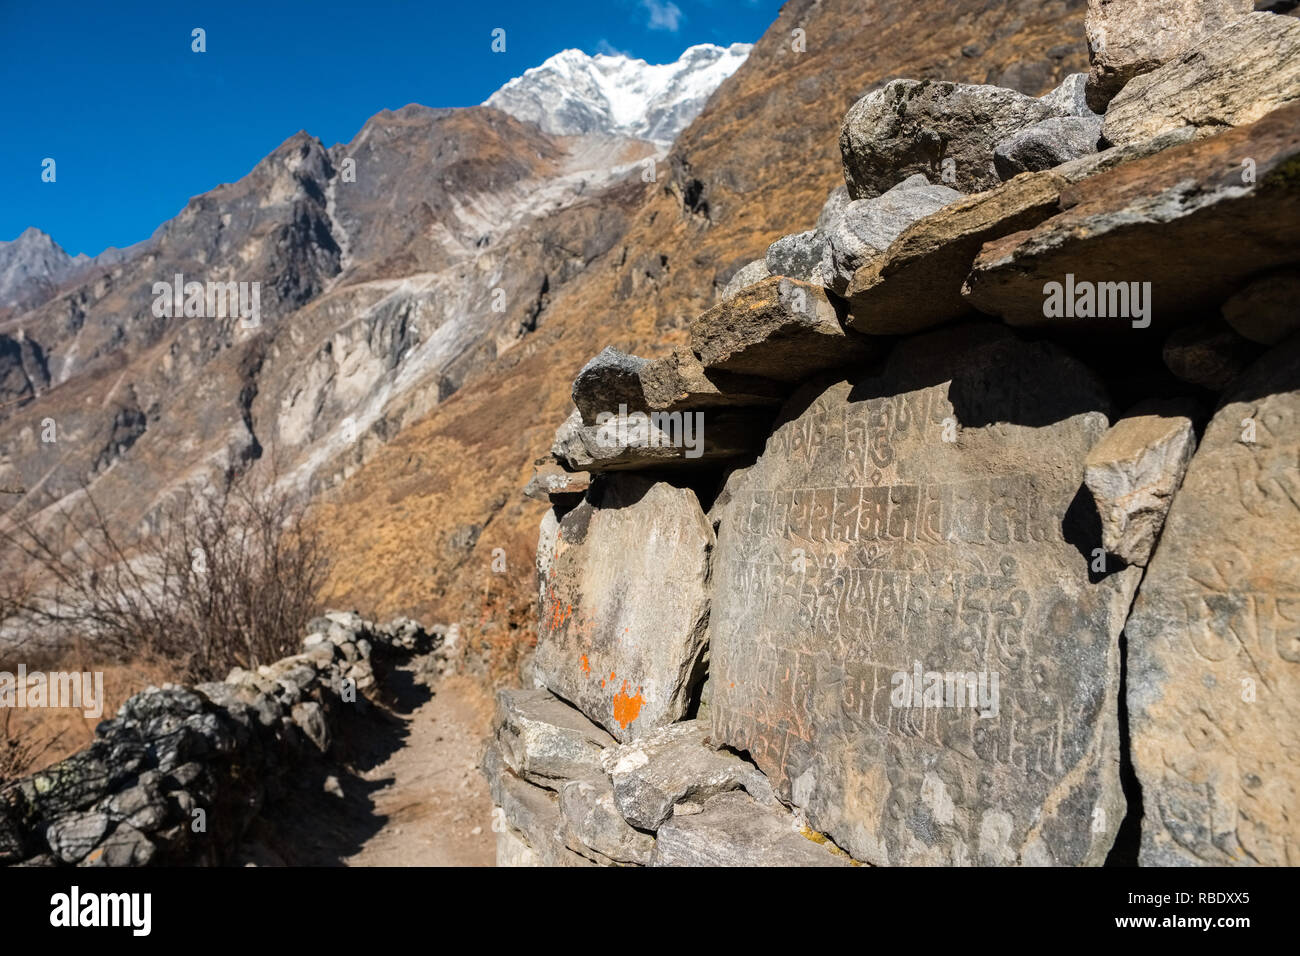 Un mur mani bouddhique avec inscriptions sur la vallée de Langtang Trek, au Népal Himalaya Banque D'Images